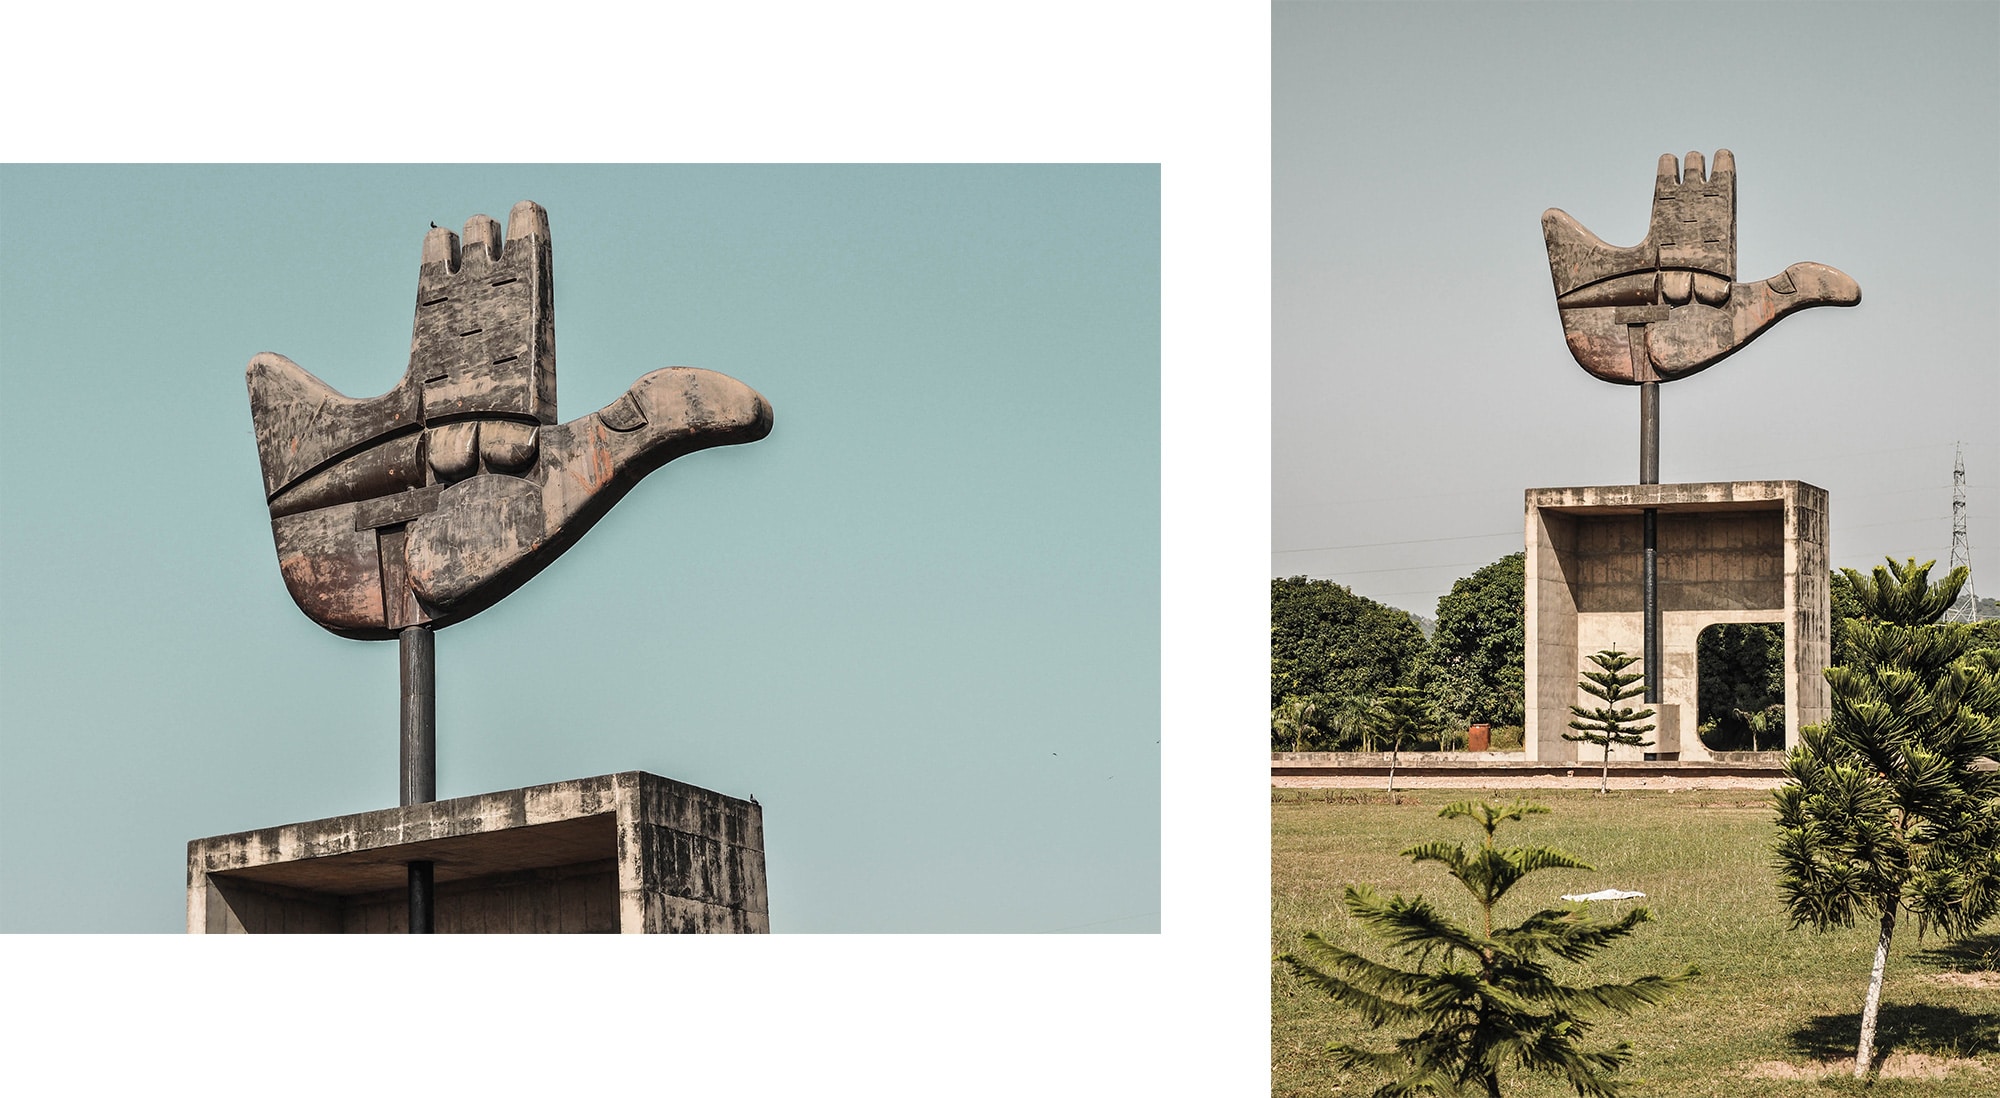 Sculpture d'une main à Chandigarh par l'architecte suisse le Corbusier en Inde